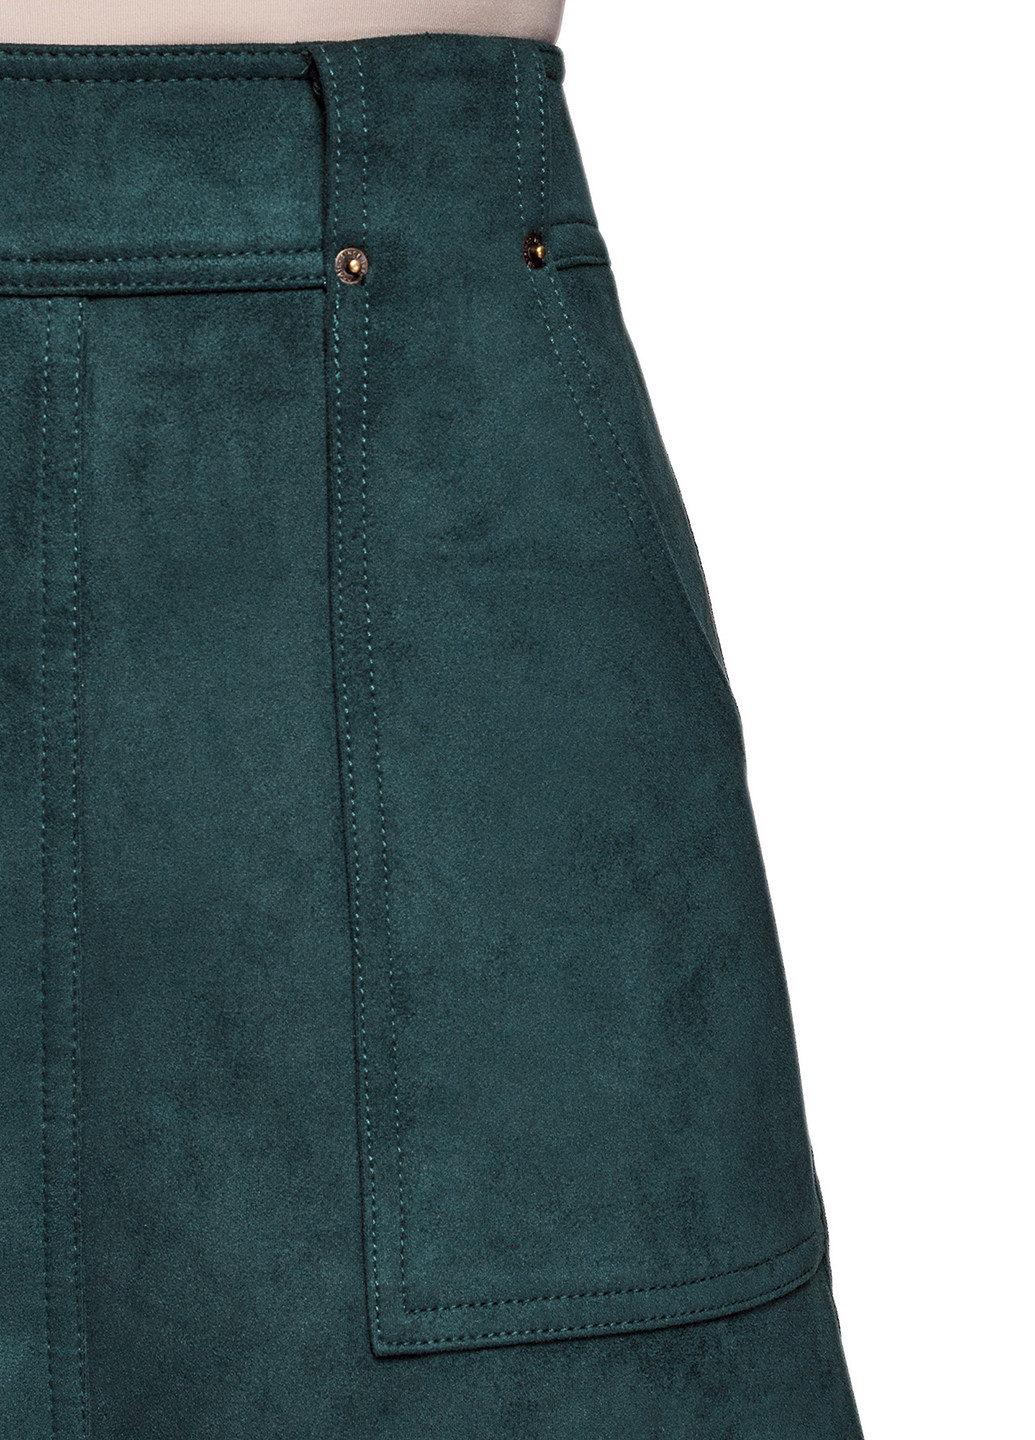 Темно-зеленая кэжуал однотонная юбка Oodji карандаш